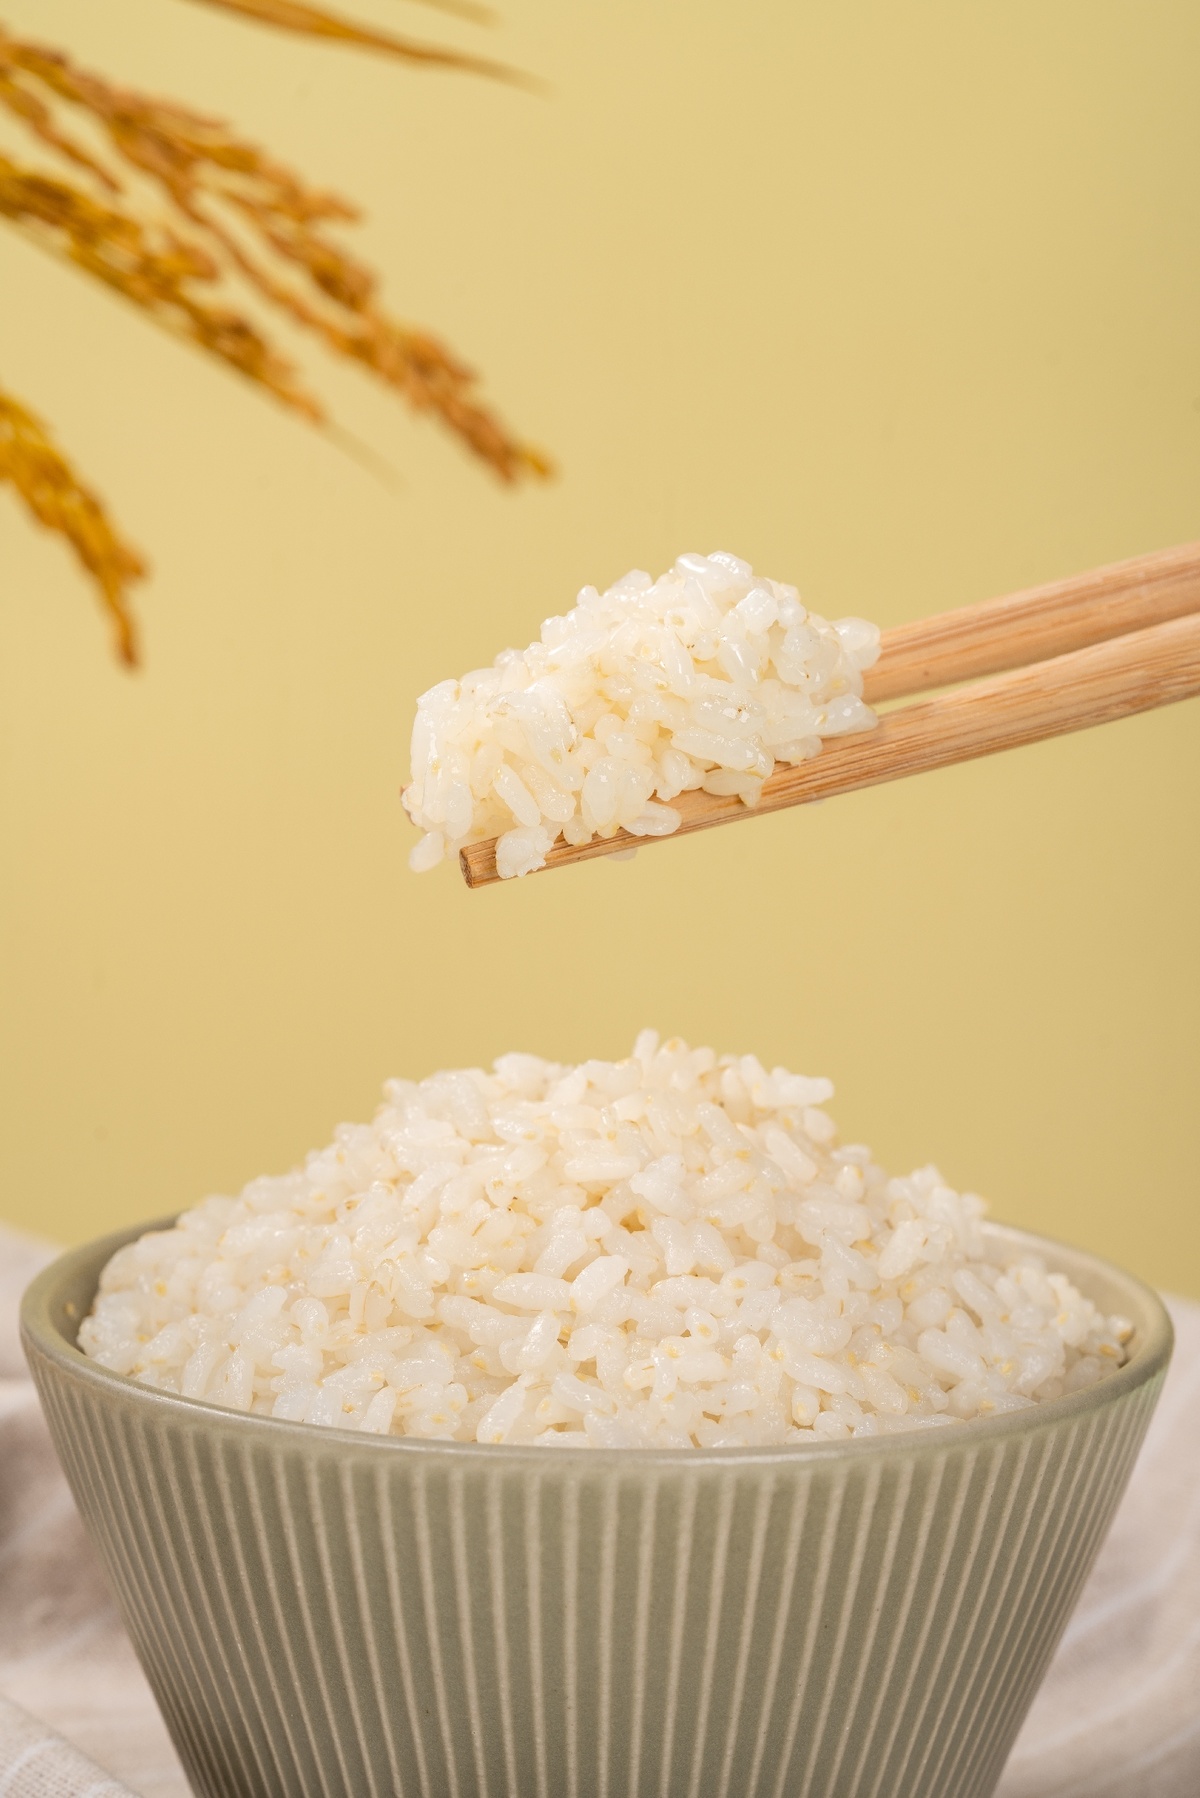 碗里用筷子夹着米饭